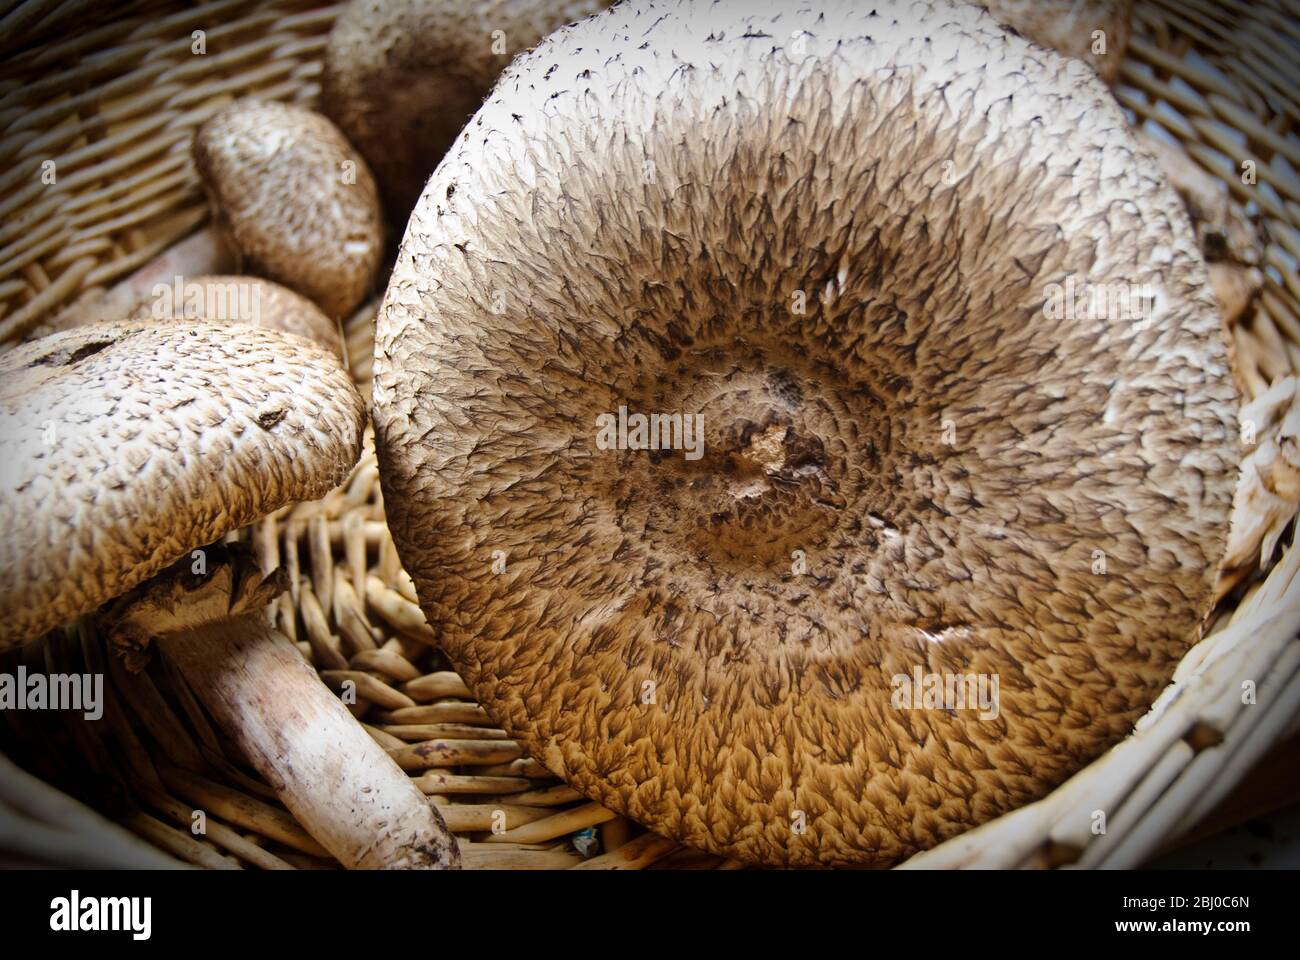 Agaricus augustus, di recente raccolta, conosciuto anche come "il Principe", un fungo del genere Agaricus in un cesto di vimini. - Foto Stock